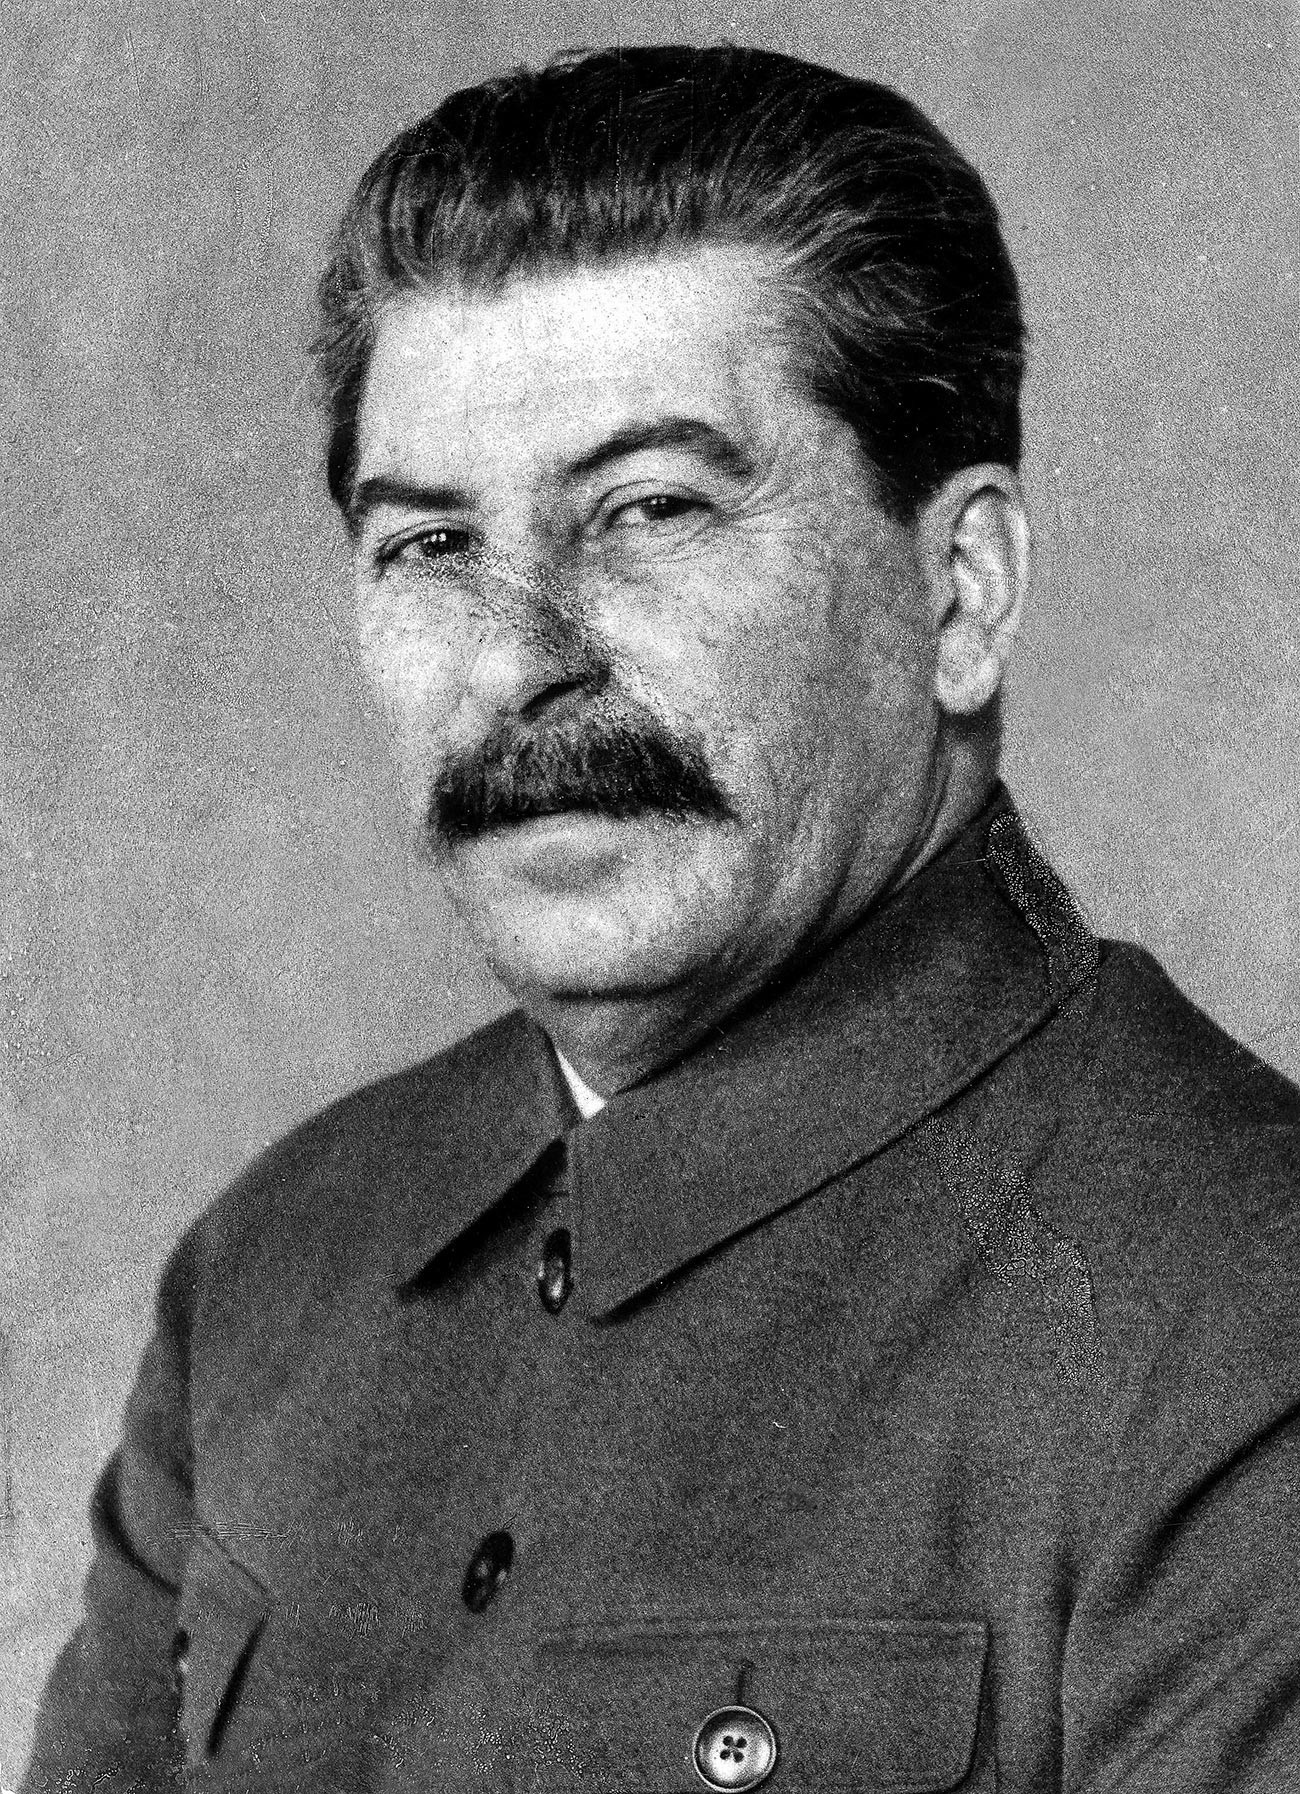 Ini adalah salah satu foto Stalin yang langka, yang memperlihatkan bopeng di wajahnya dengan jelas.